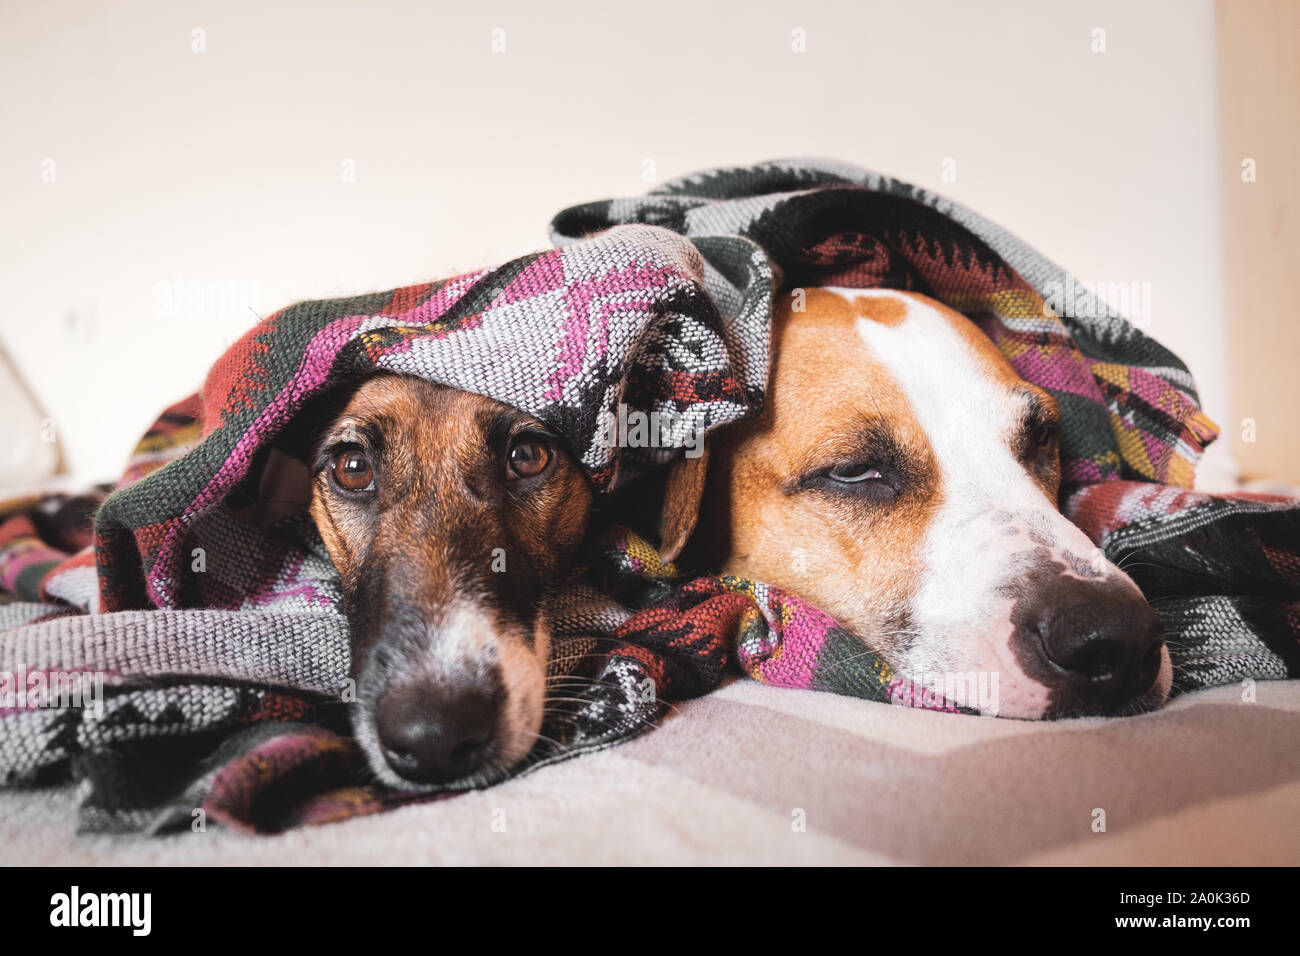 Dos jóvenes sleepy perros envueltos en el poncho. Fox Terrier y staffordshire terrier perros acostado en la cama, el concepto de la amistad y la confianza entre dos mascotas Foto de stock